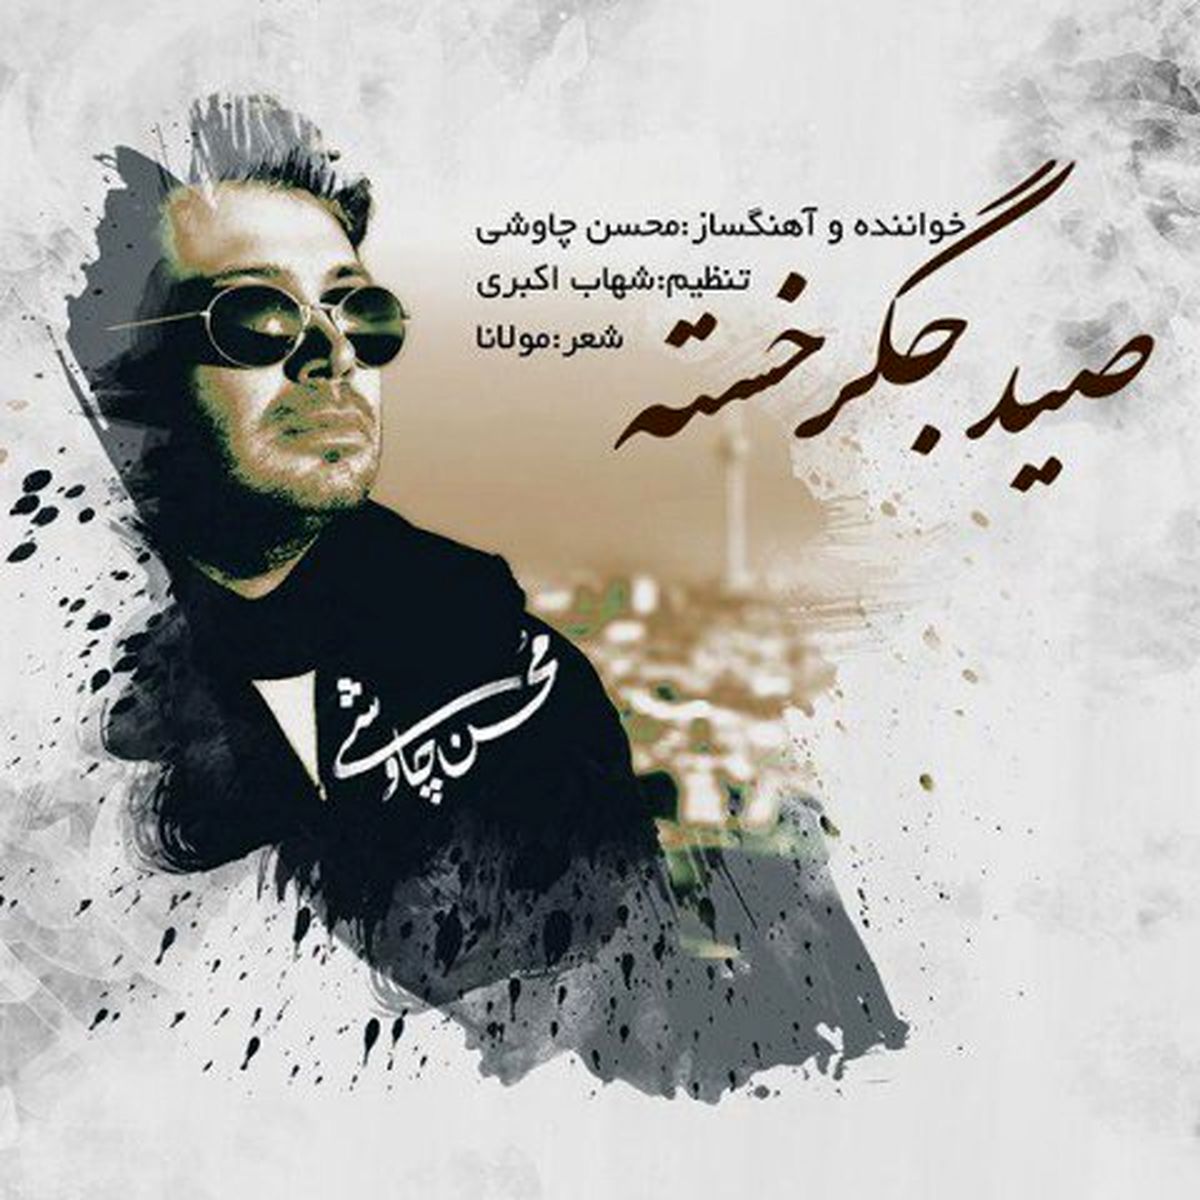 آهنگ جدید محسن چاوشی به نام "صید جگر خسته"